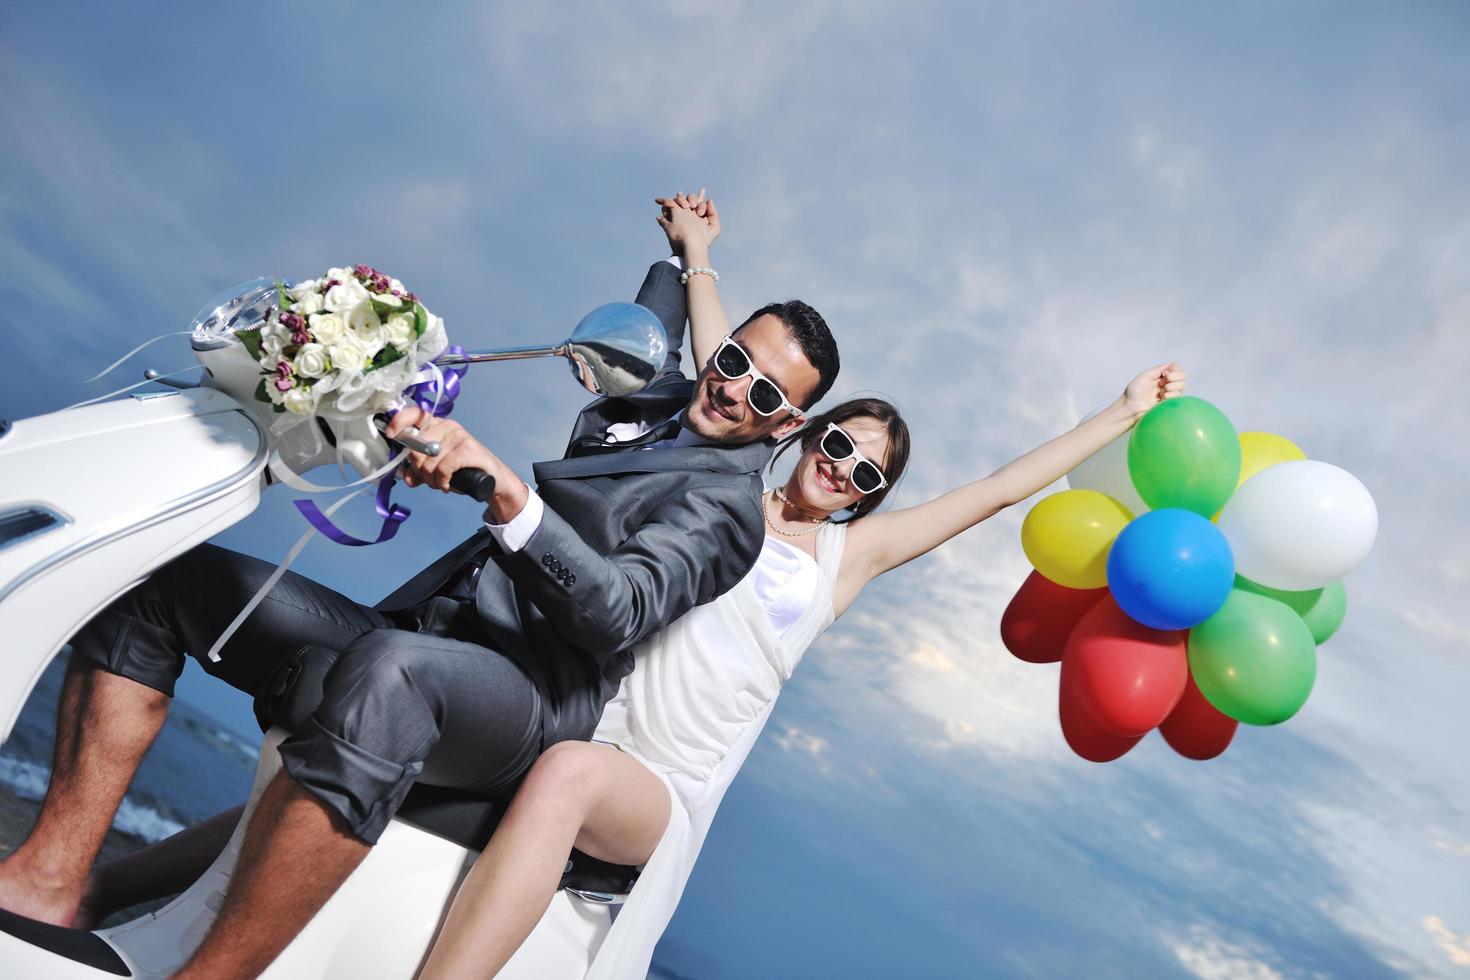 Gerade verheiratetes Paar am Strand fährt weißen Roller foto